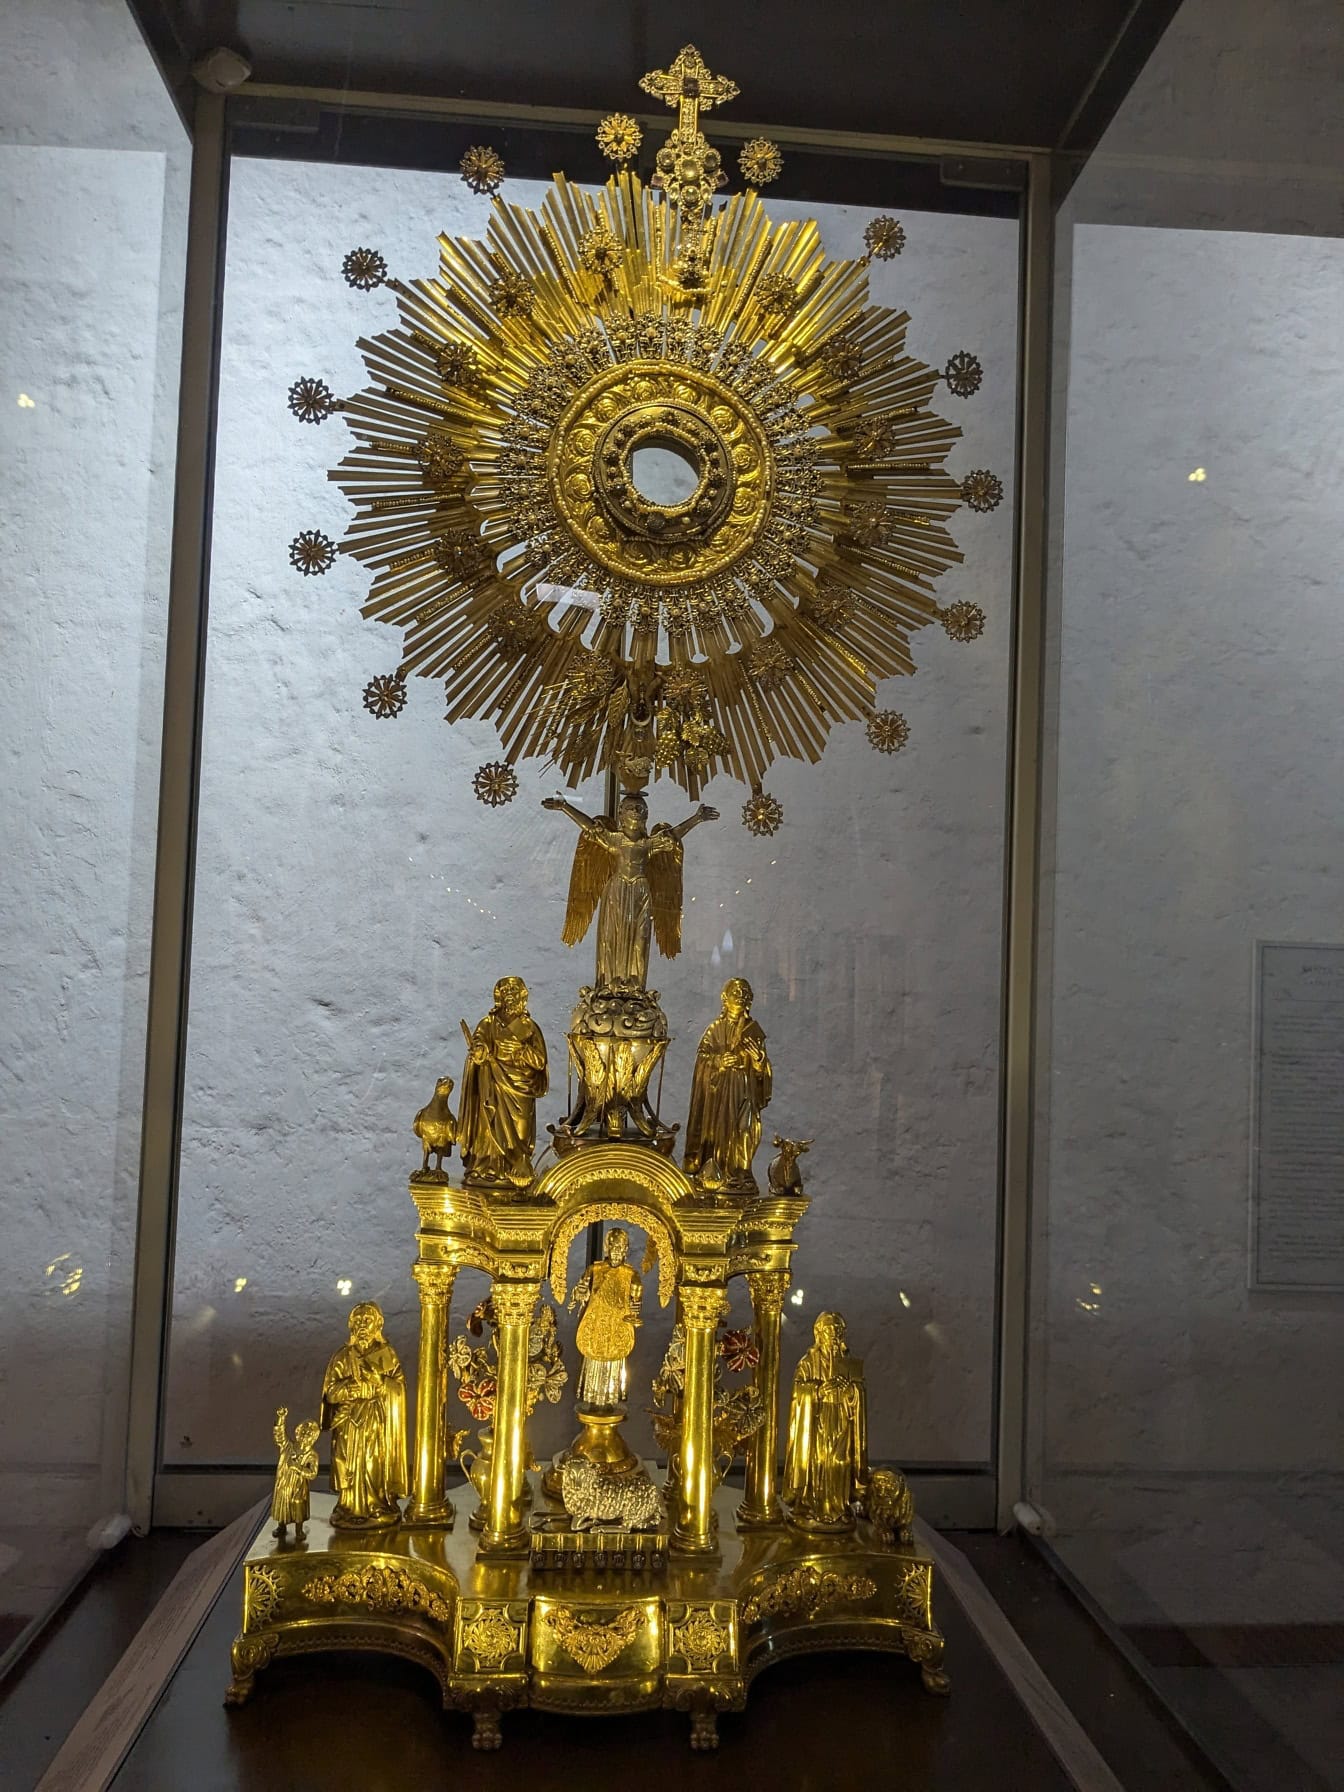 La statue de l’ostensoir, un objet en or unique au musée du monastère du Second Ordre dominicain de Santa Catalina de Siena à Arequipa au Pérou